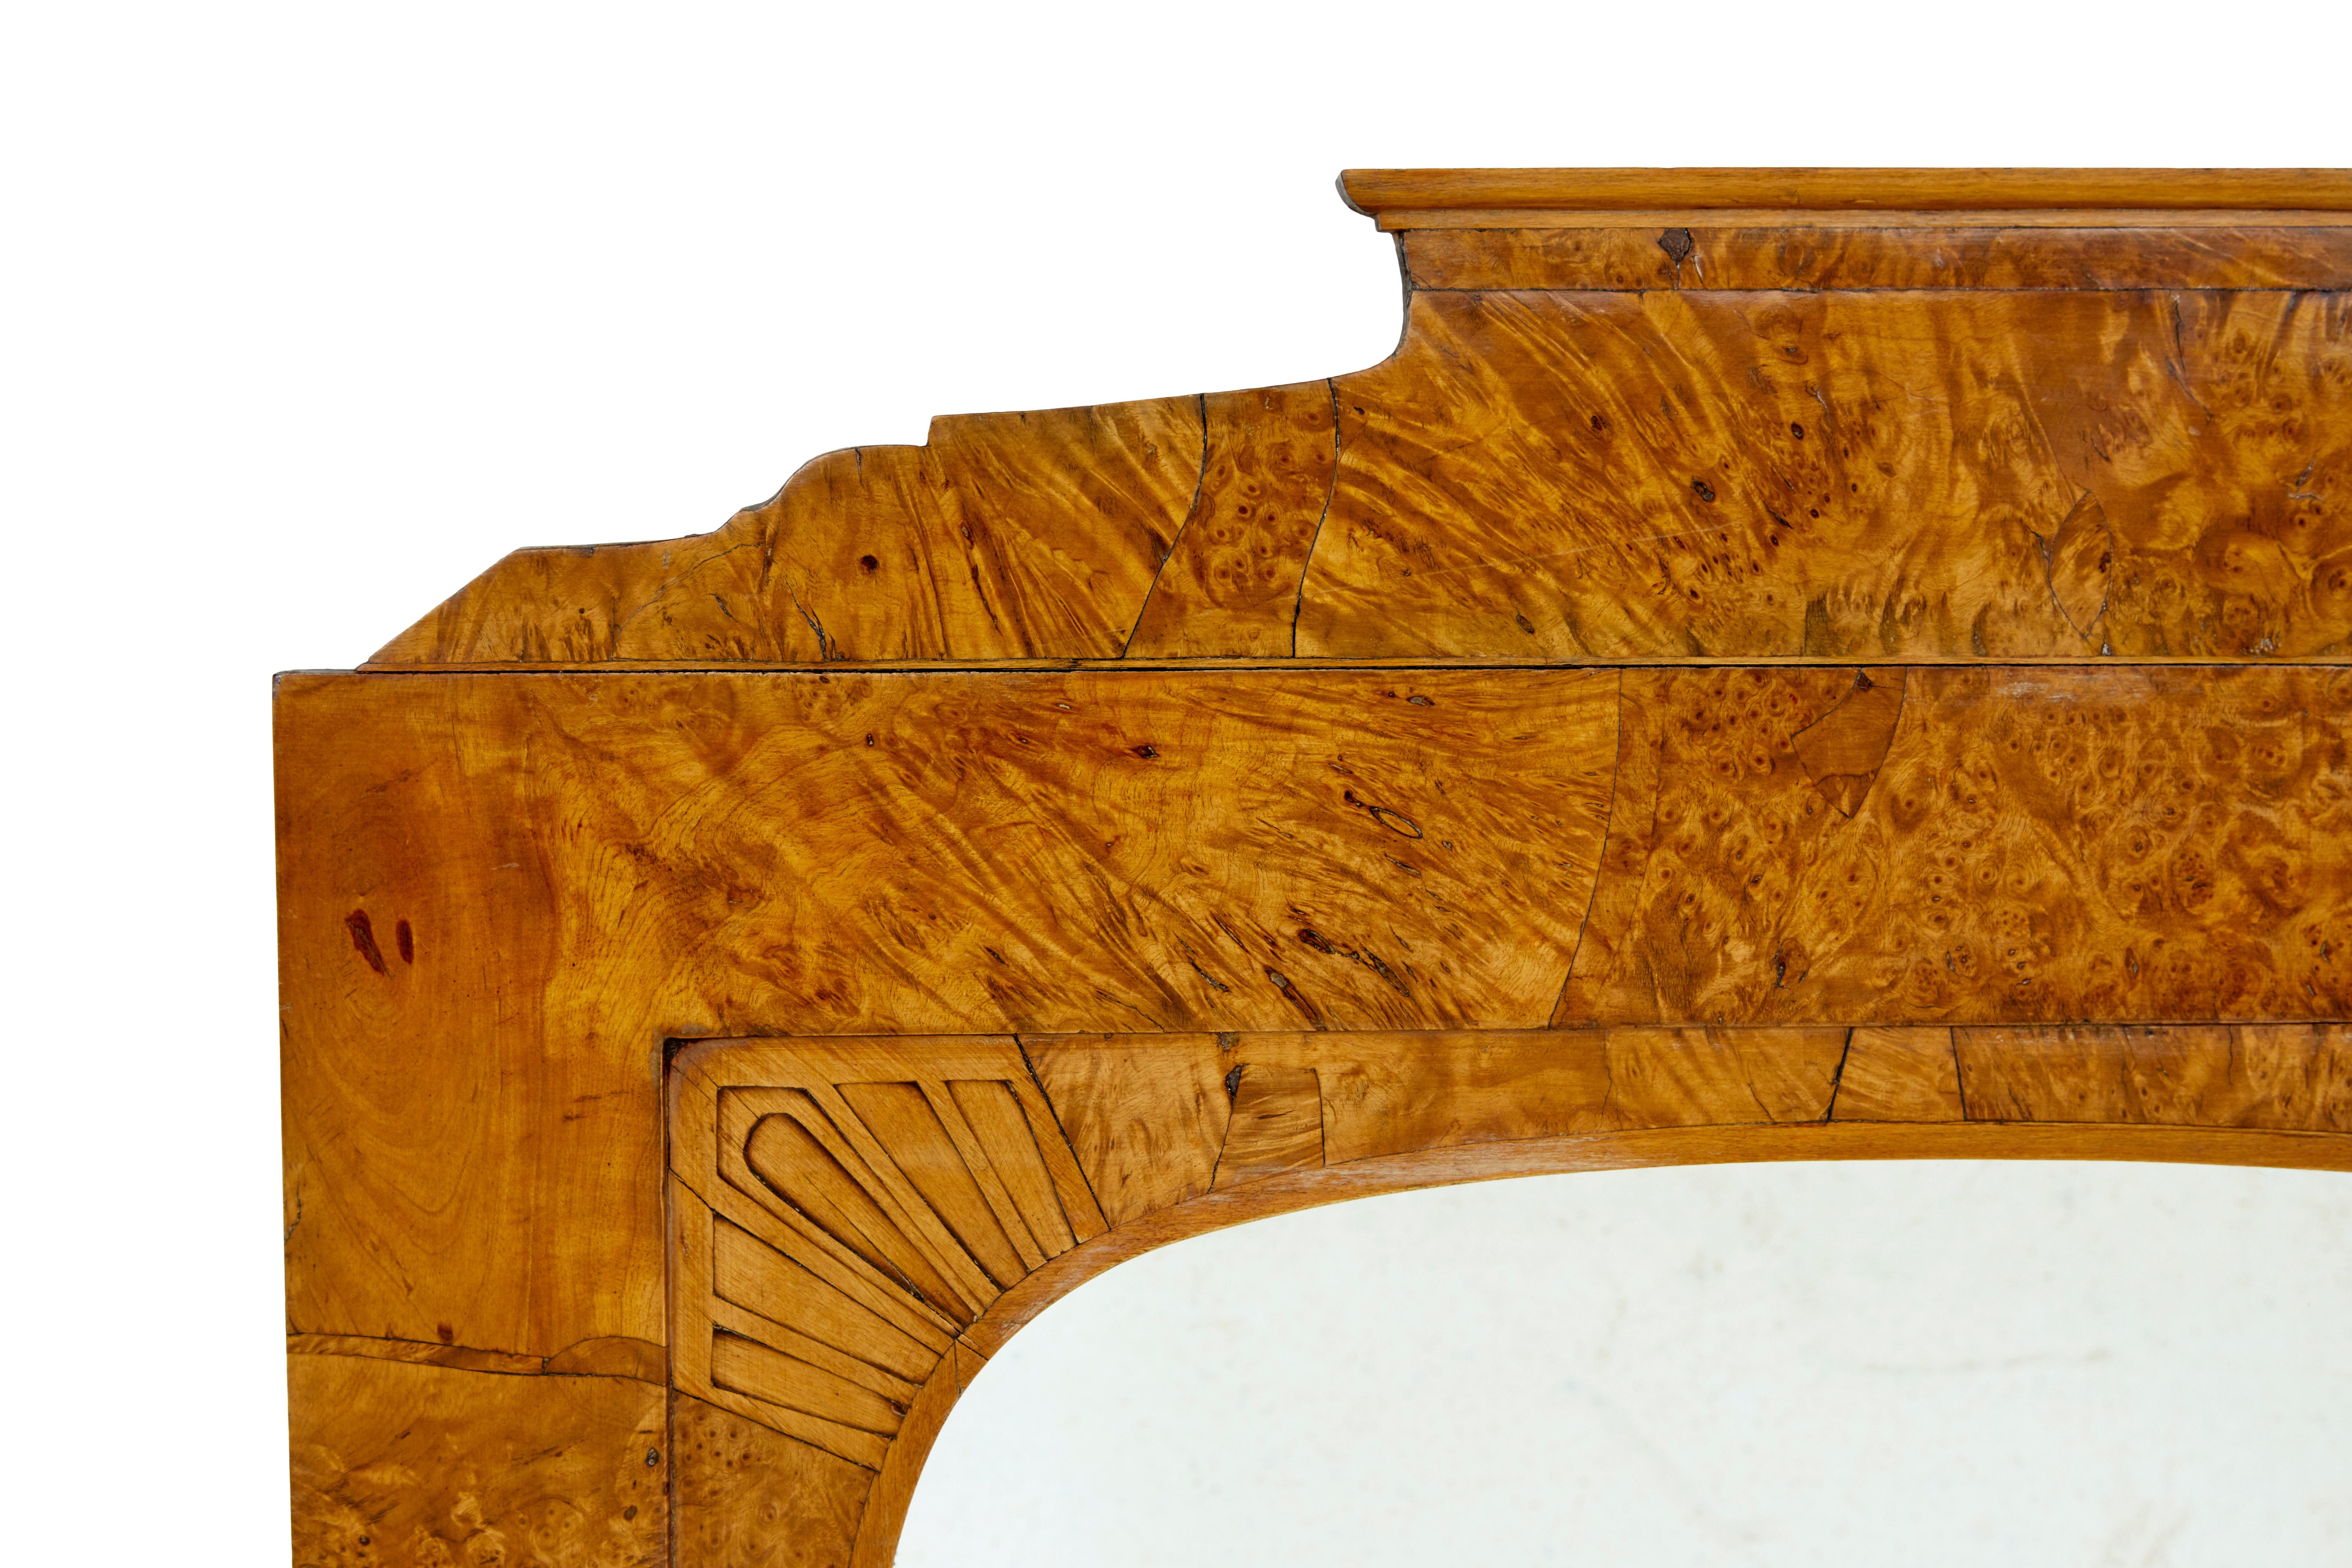 Biedermeier Mantelspiegel aus Wurzelbirke, 19. Jahrhundert, um 1830.

Hergestellt aus hochwertigem Maserbirkenholz. Geformte architektonische Platte, eingelegte Fächer an der Innenkante. Ideale Größe für mehrere ROOMS wie Schlafzimmer und